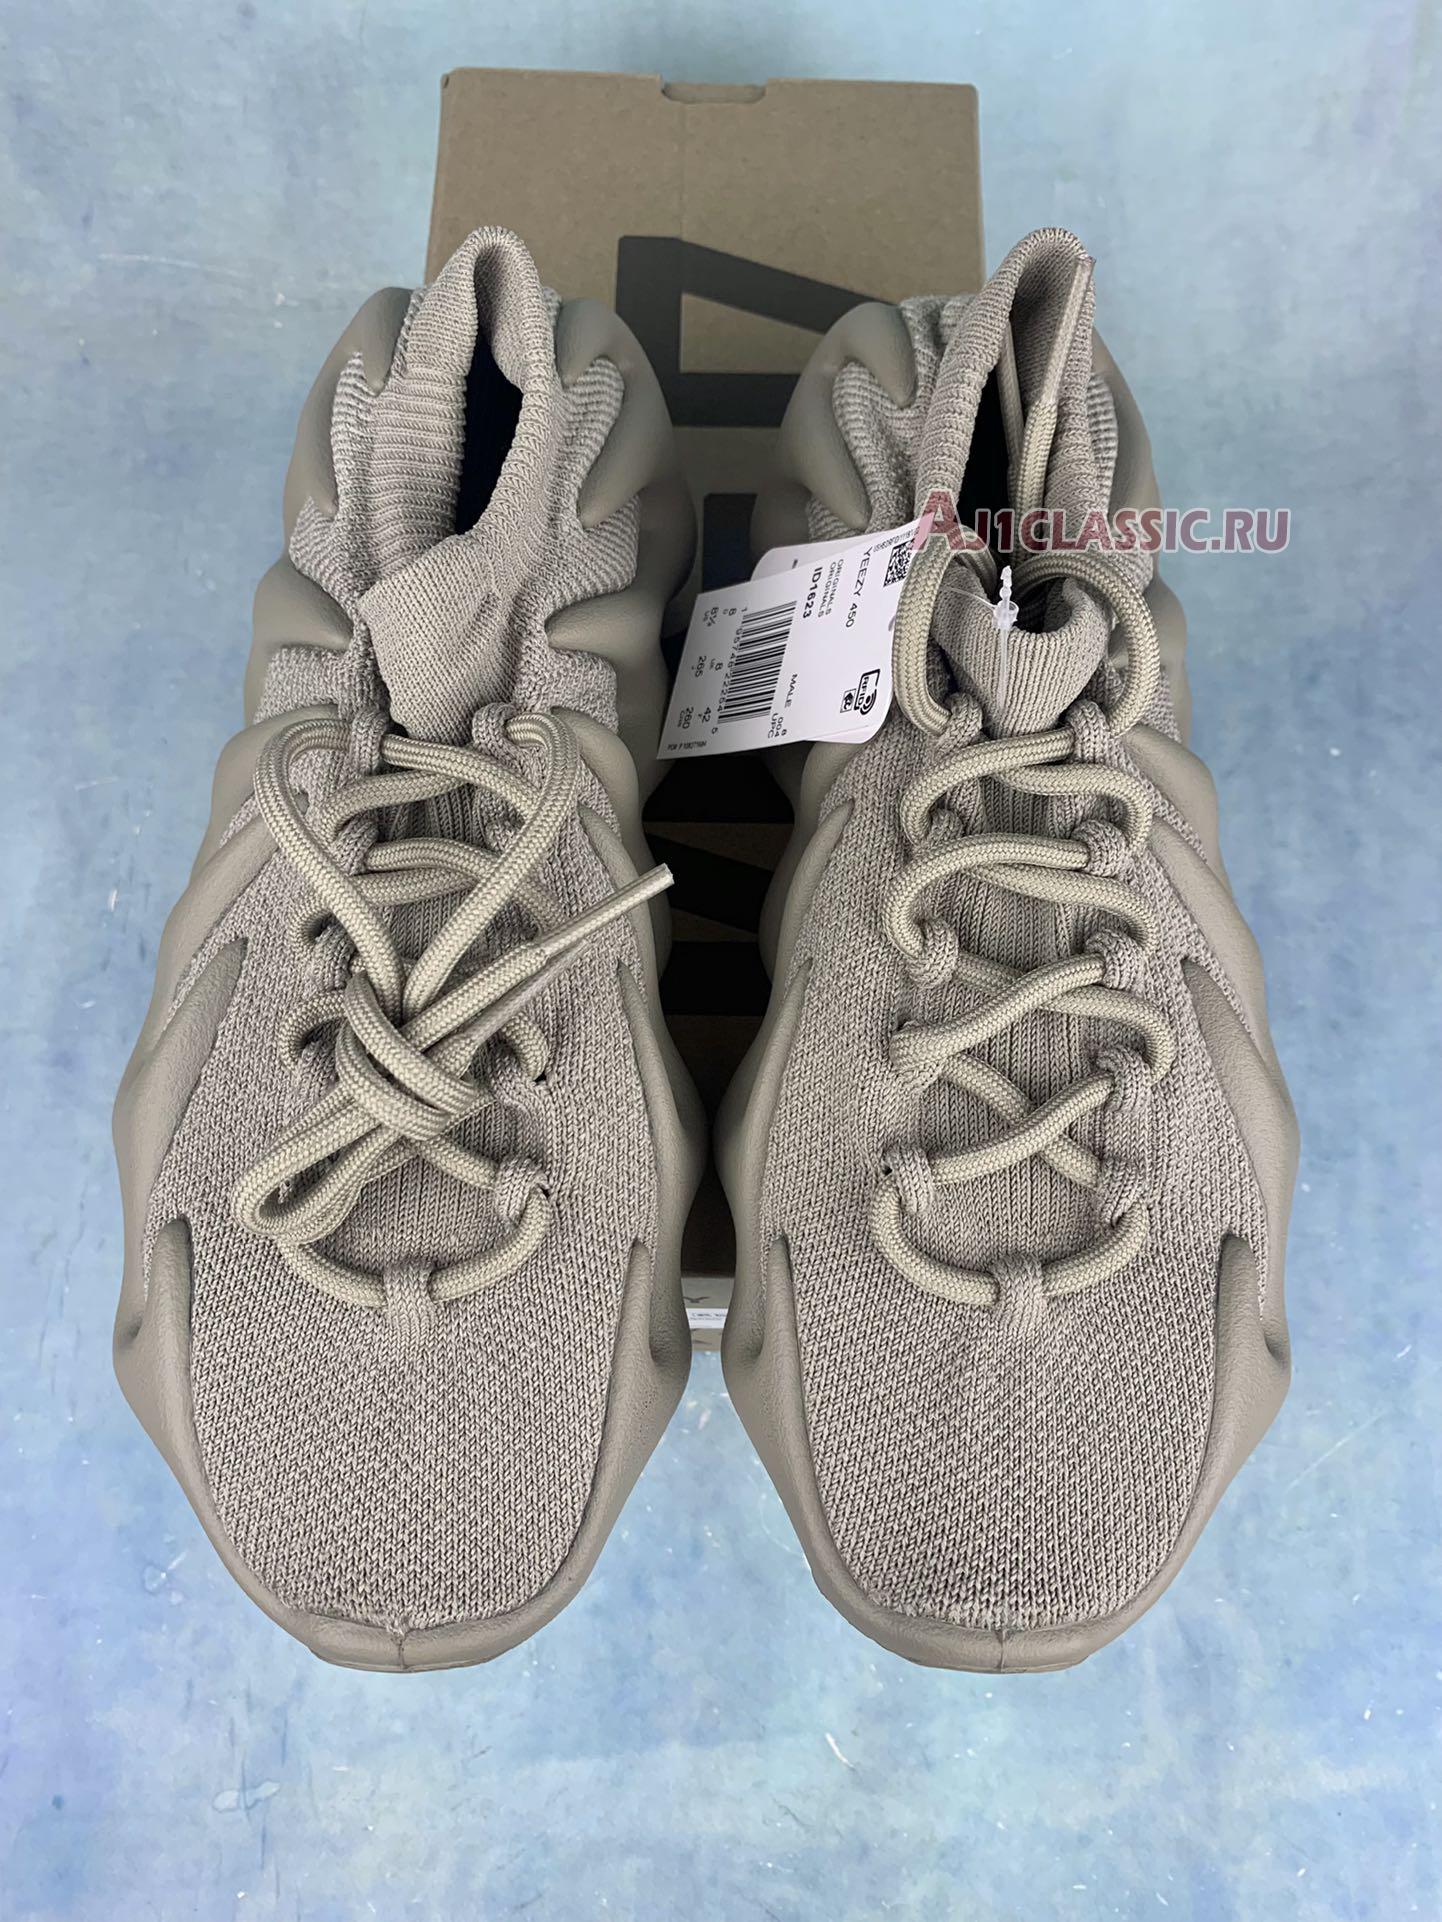 Adidas Yeezy 450 "Stone Flax" ID1623